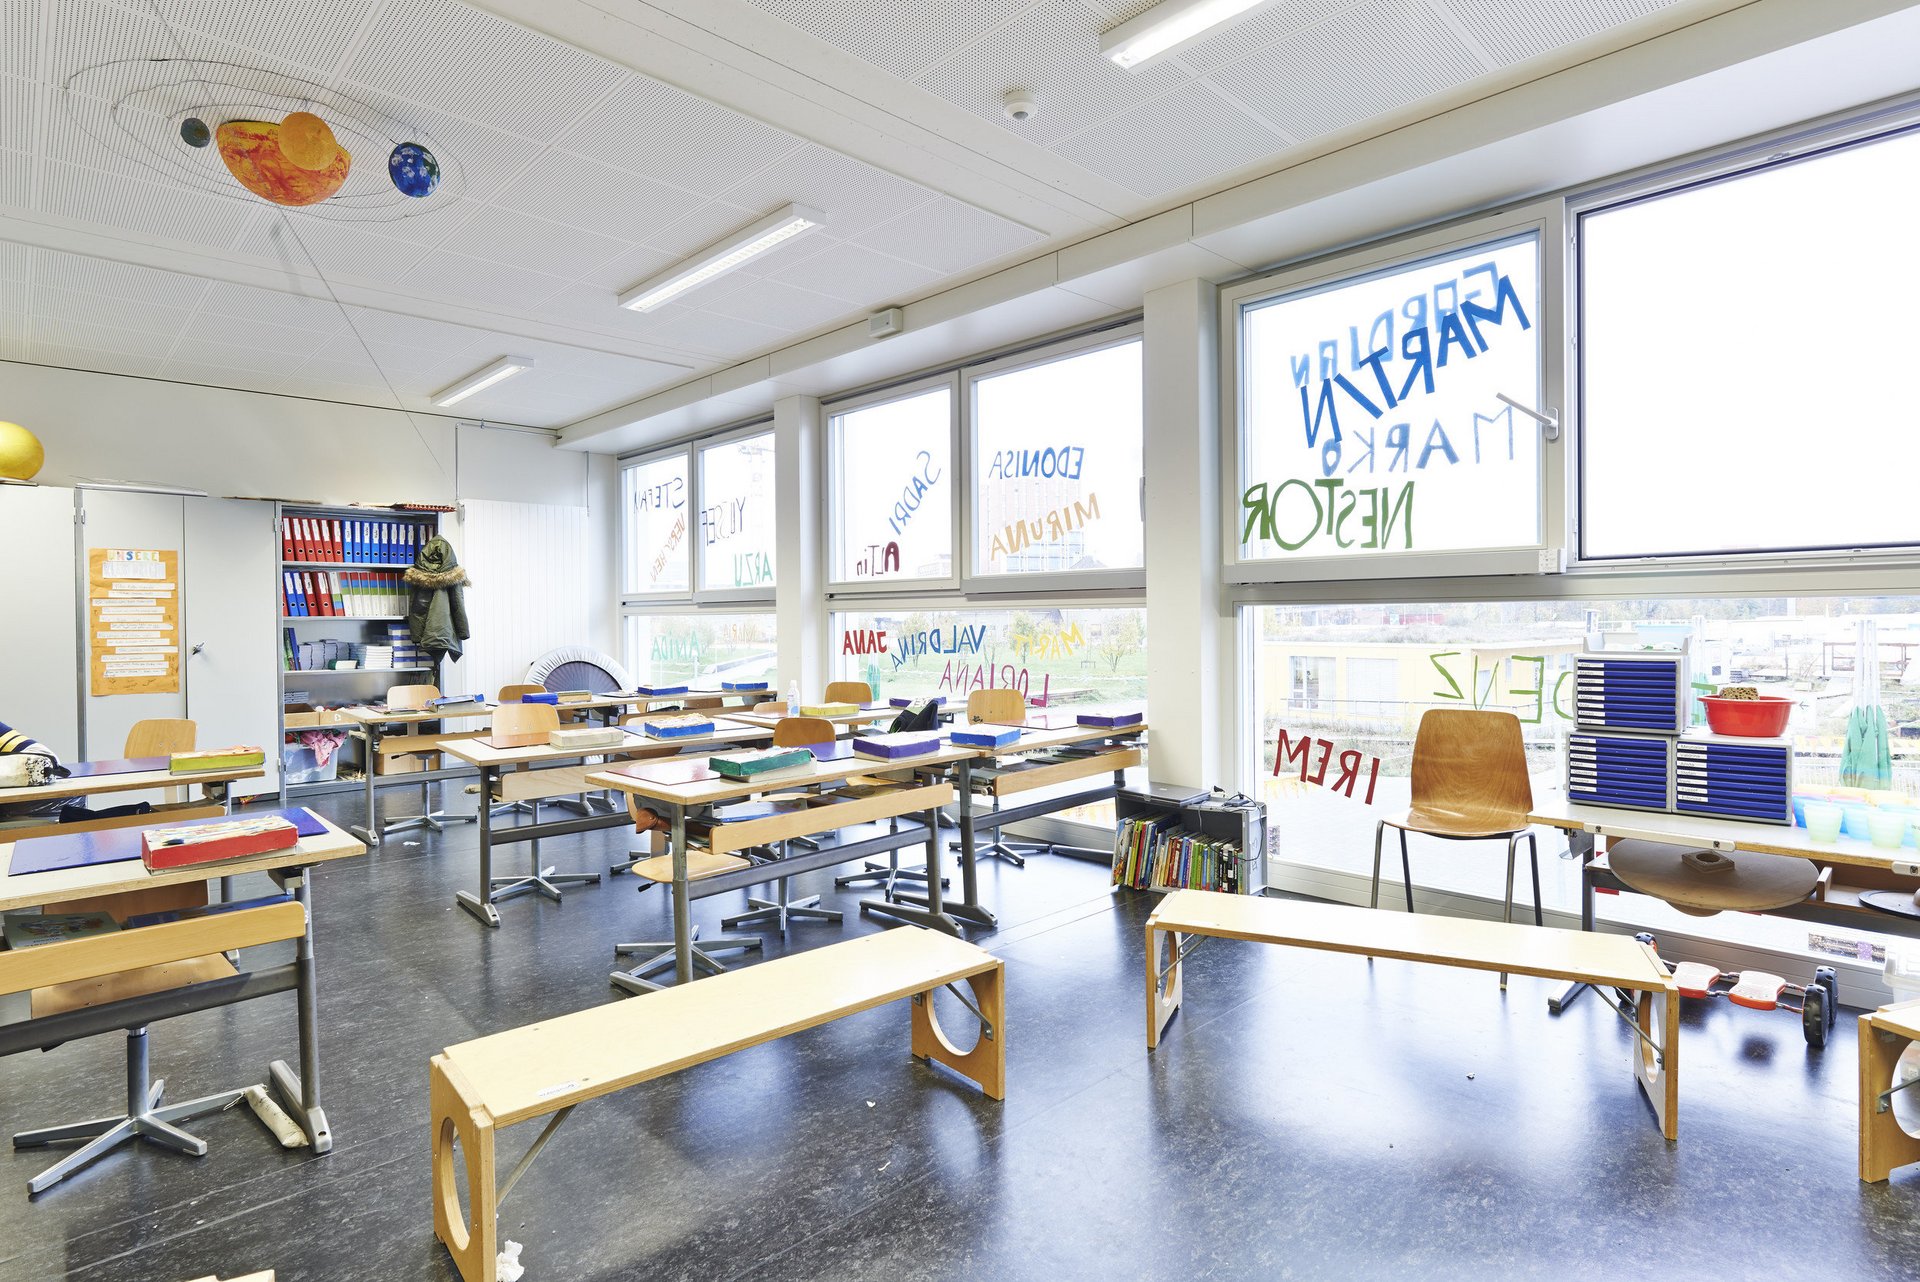 Lichtdurchflutetes ausgestattetes Klassenzimmer mit 3 gleich grossen Fensterelementen